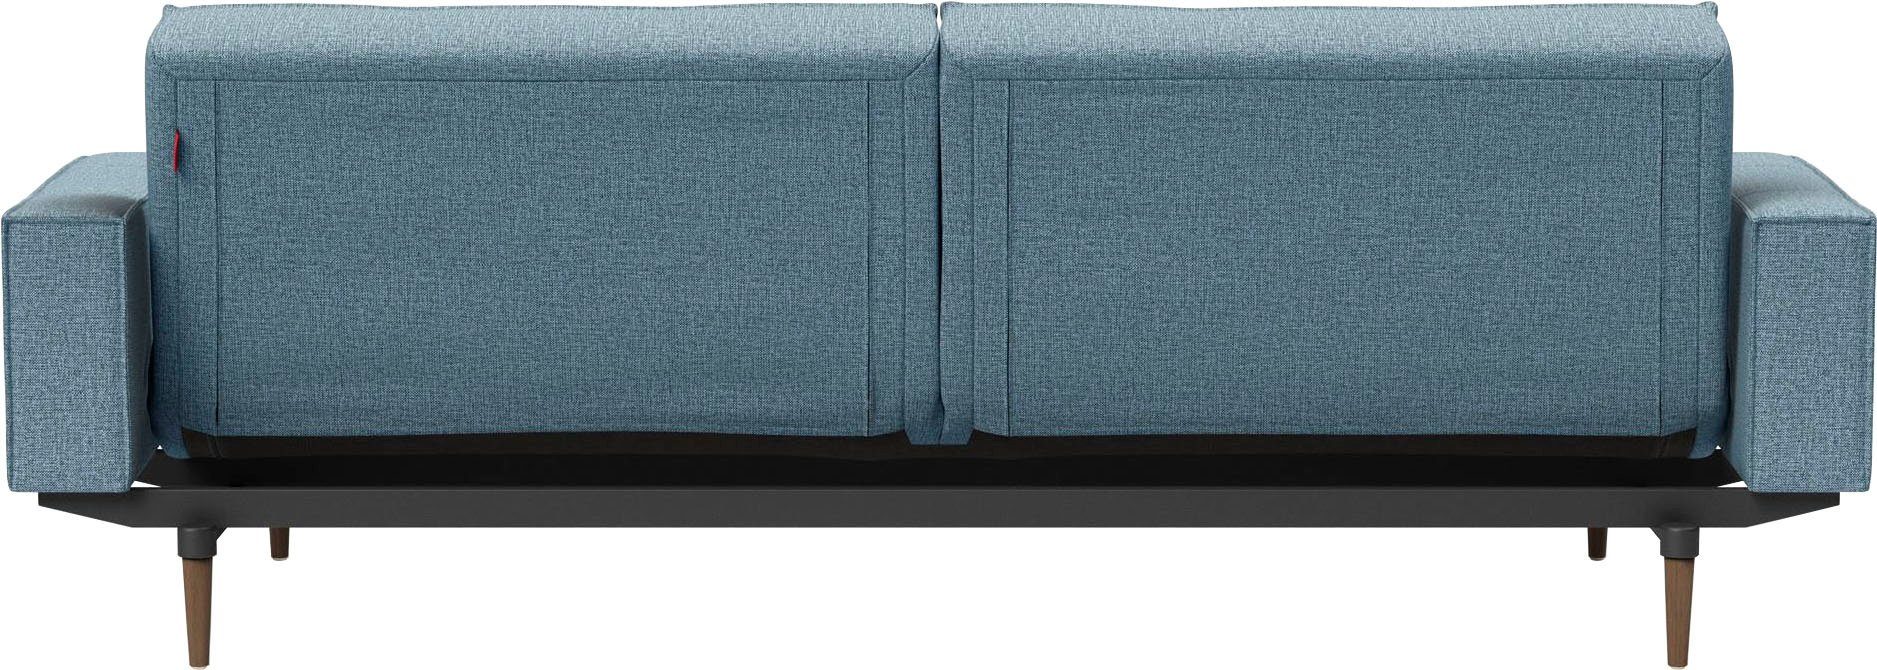 Armlehne in Styletto Beinen, Design dunklen mit Splitback, Sofa LIVING und INNOVATION ™ skandinavischen